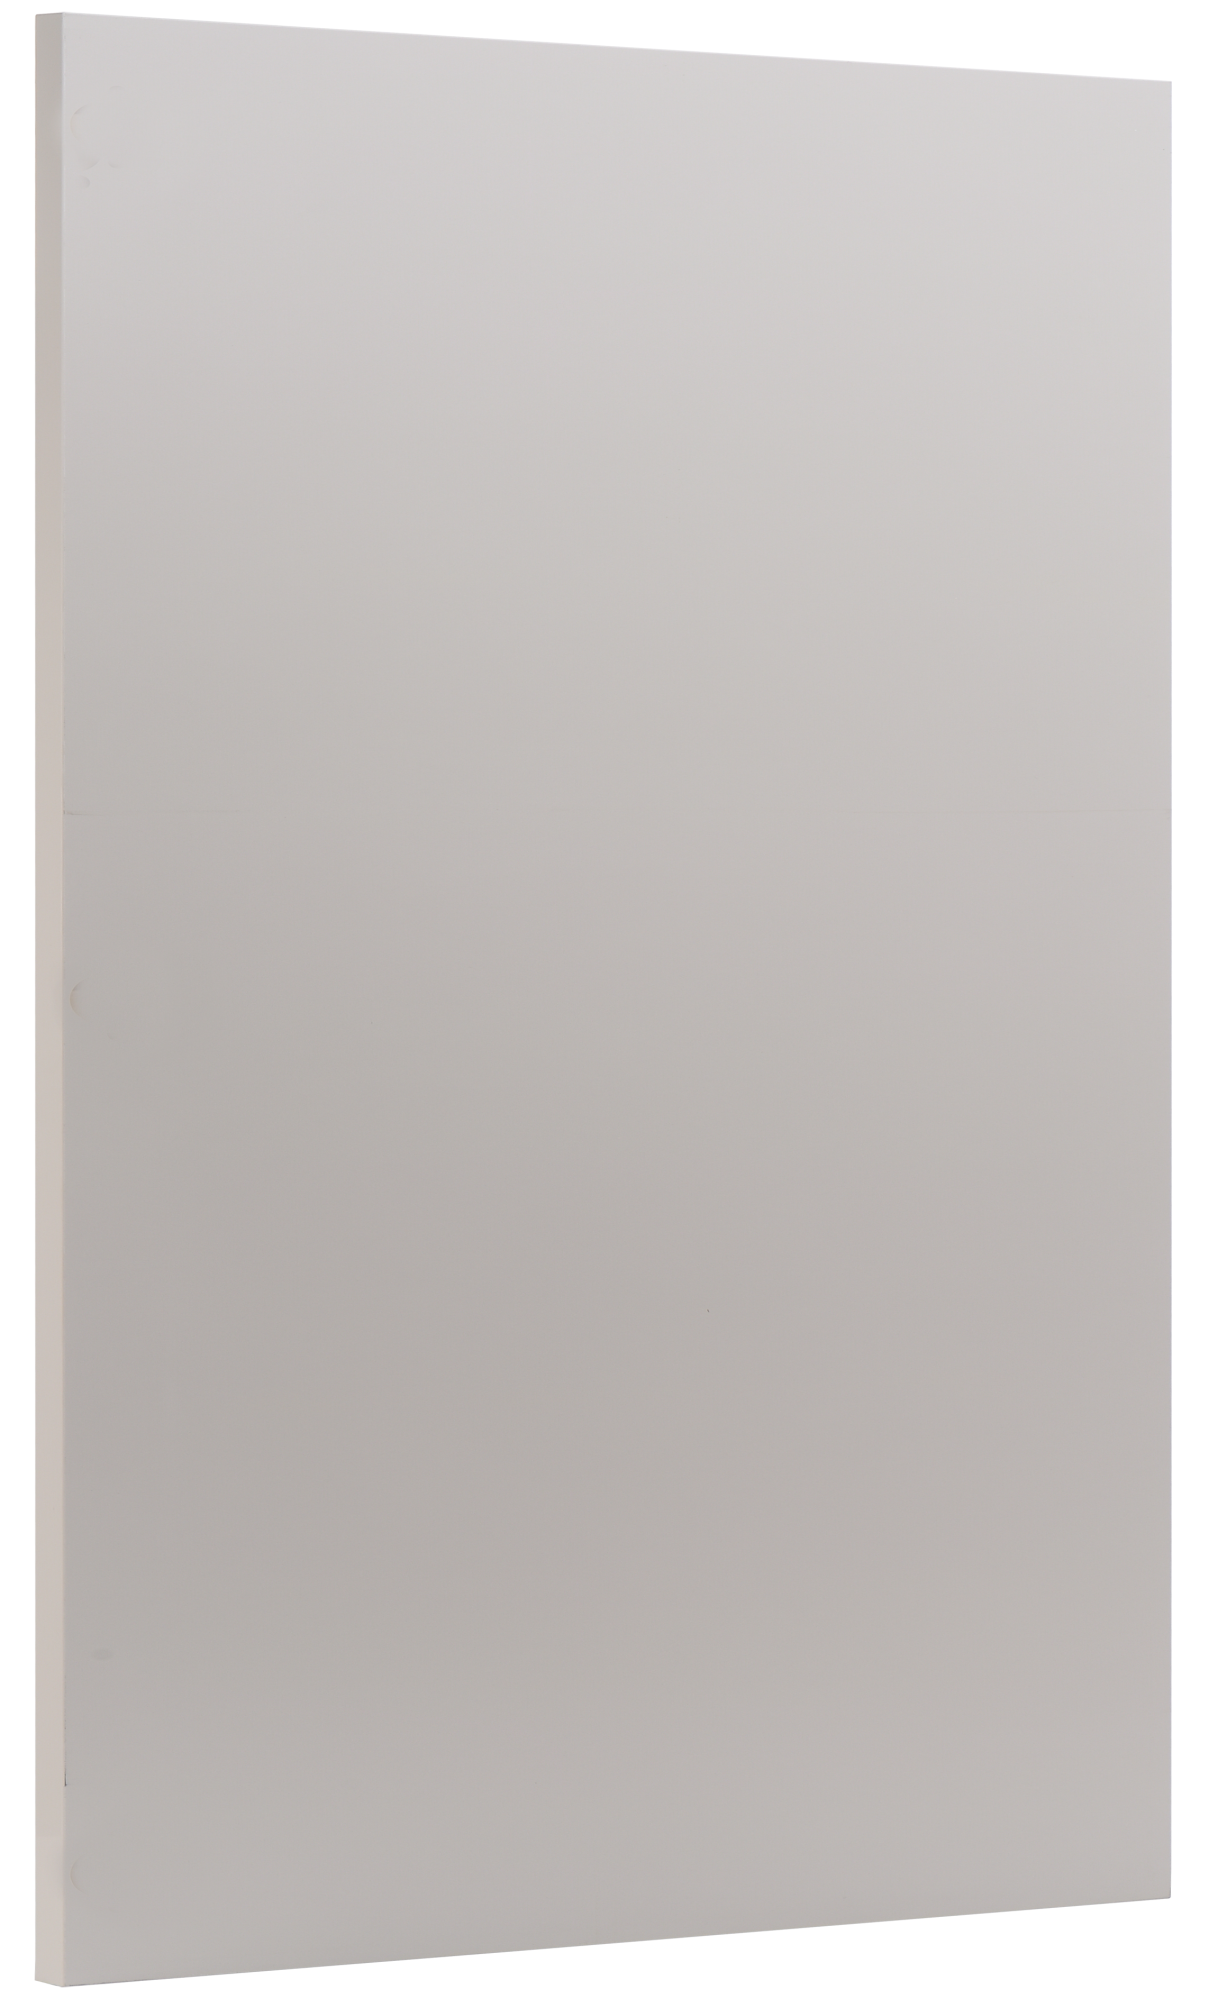 Puerta para mueble de cocina atenas topo brillo h 76.8 x l 60 cm